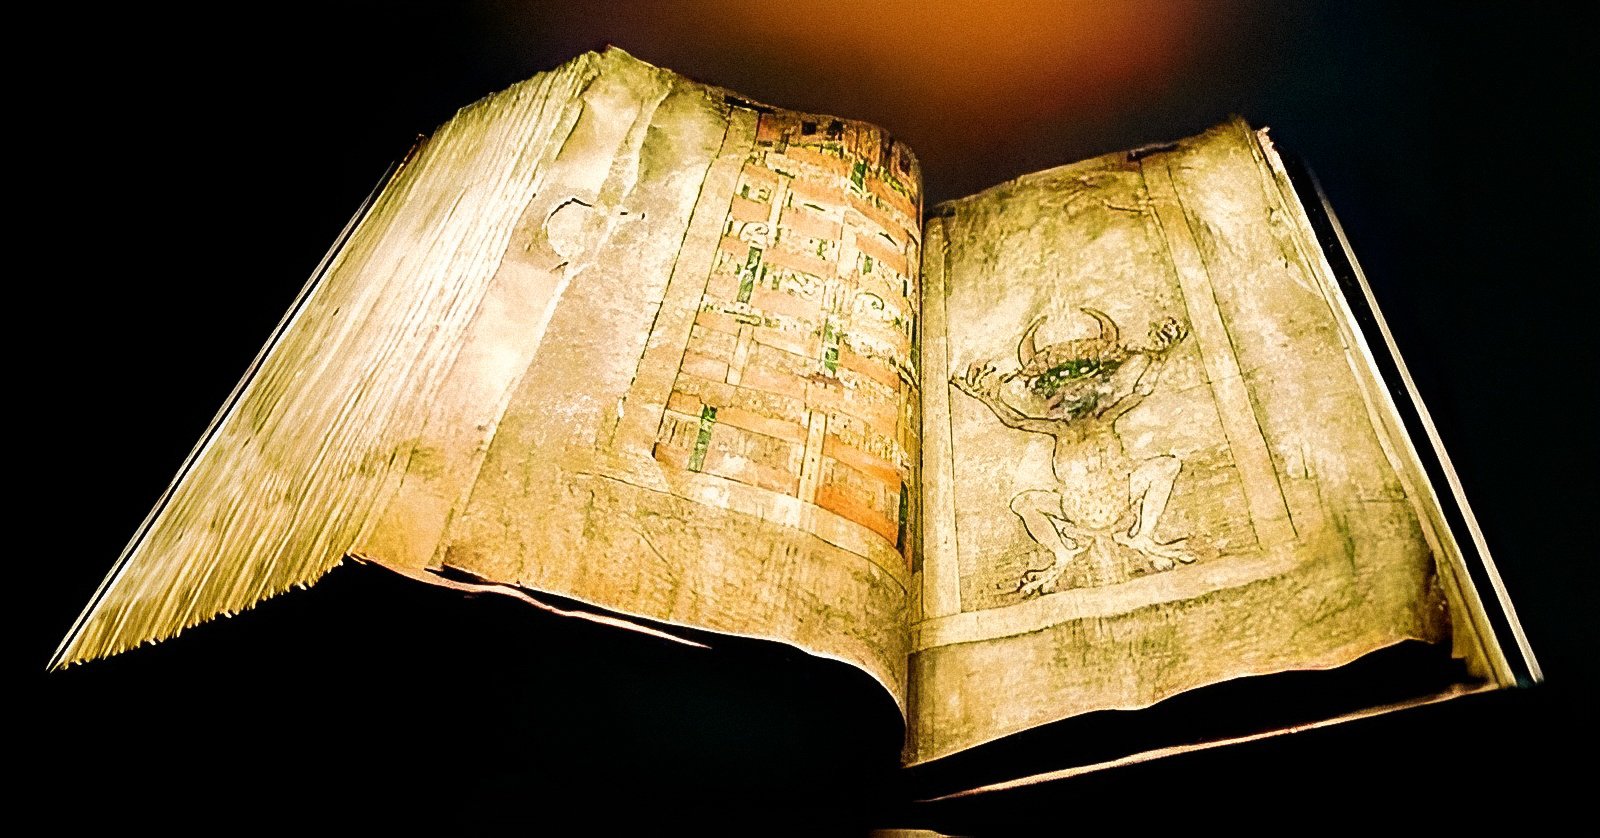 Кодекс Гигас, также известный как «Библия Дьявола», является крупнейшей и, вероятно, одной из самых странных средневековых рукописей в мире. Национальная география